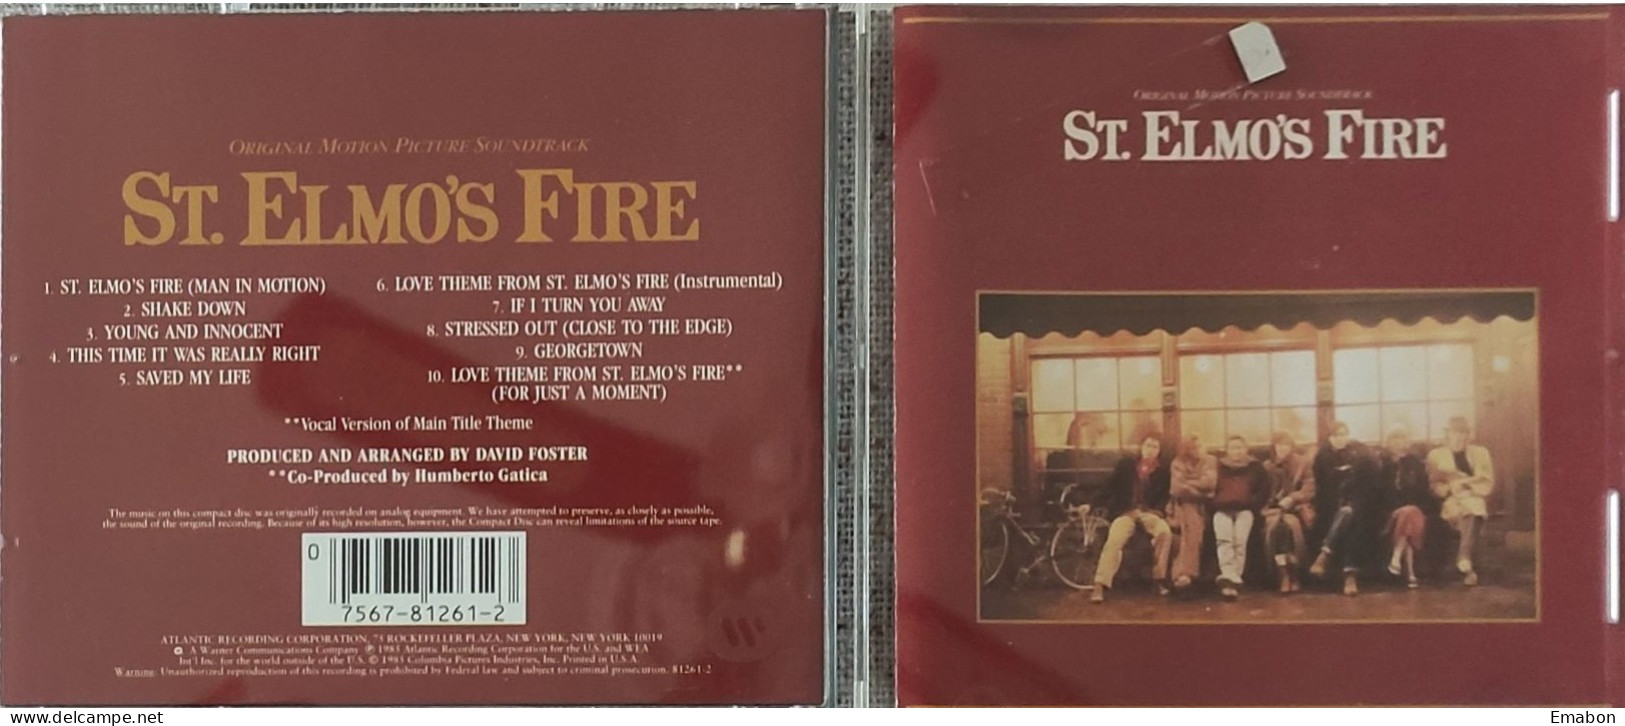 BORGATTA - FILM MUSIC  - Cd  DAVID FOSTER - ST HELMOS FIRE - ATLANTIC 1985 - USATO In Buono Stato - Soundtracks, Film Music